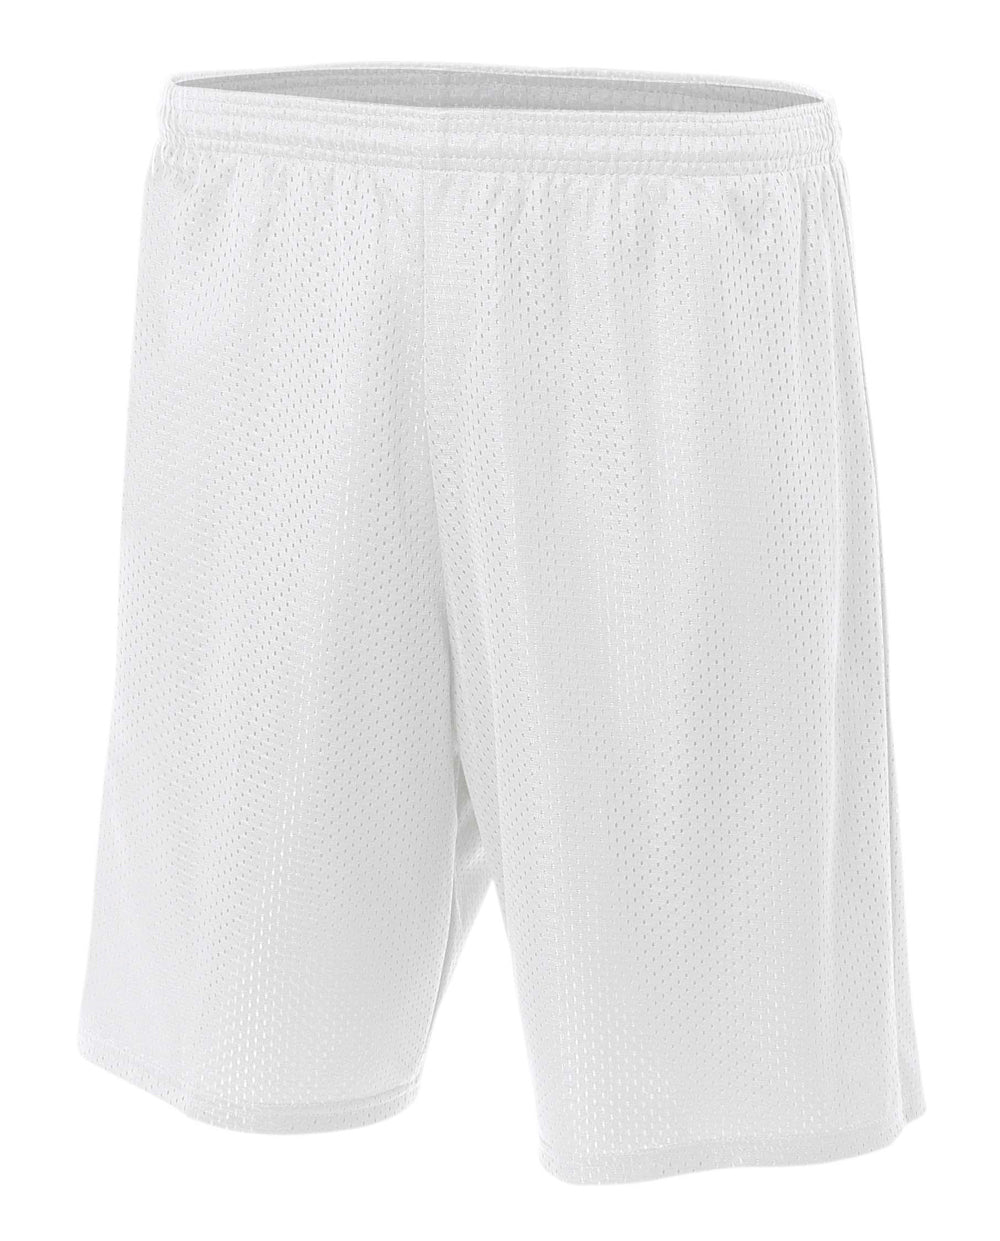 White A4 Utility Mesh Shorts